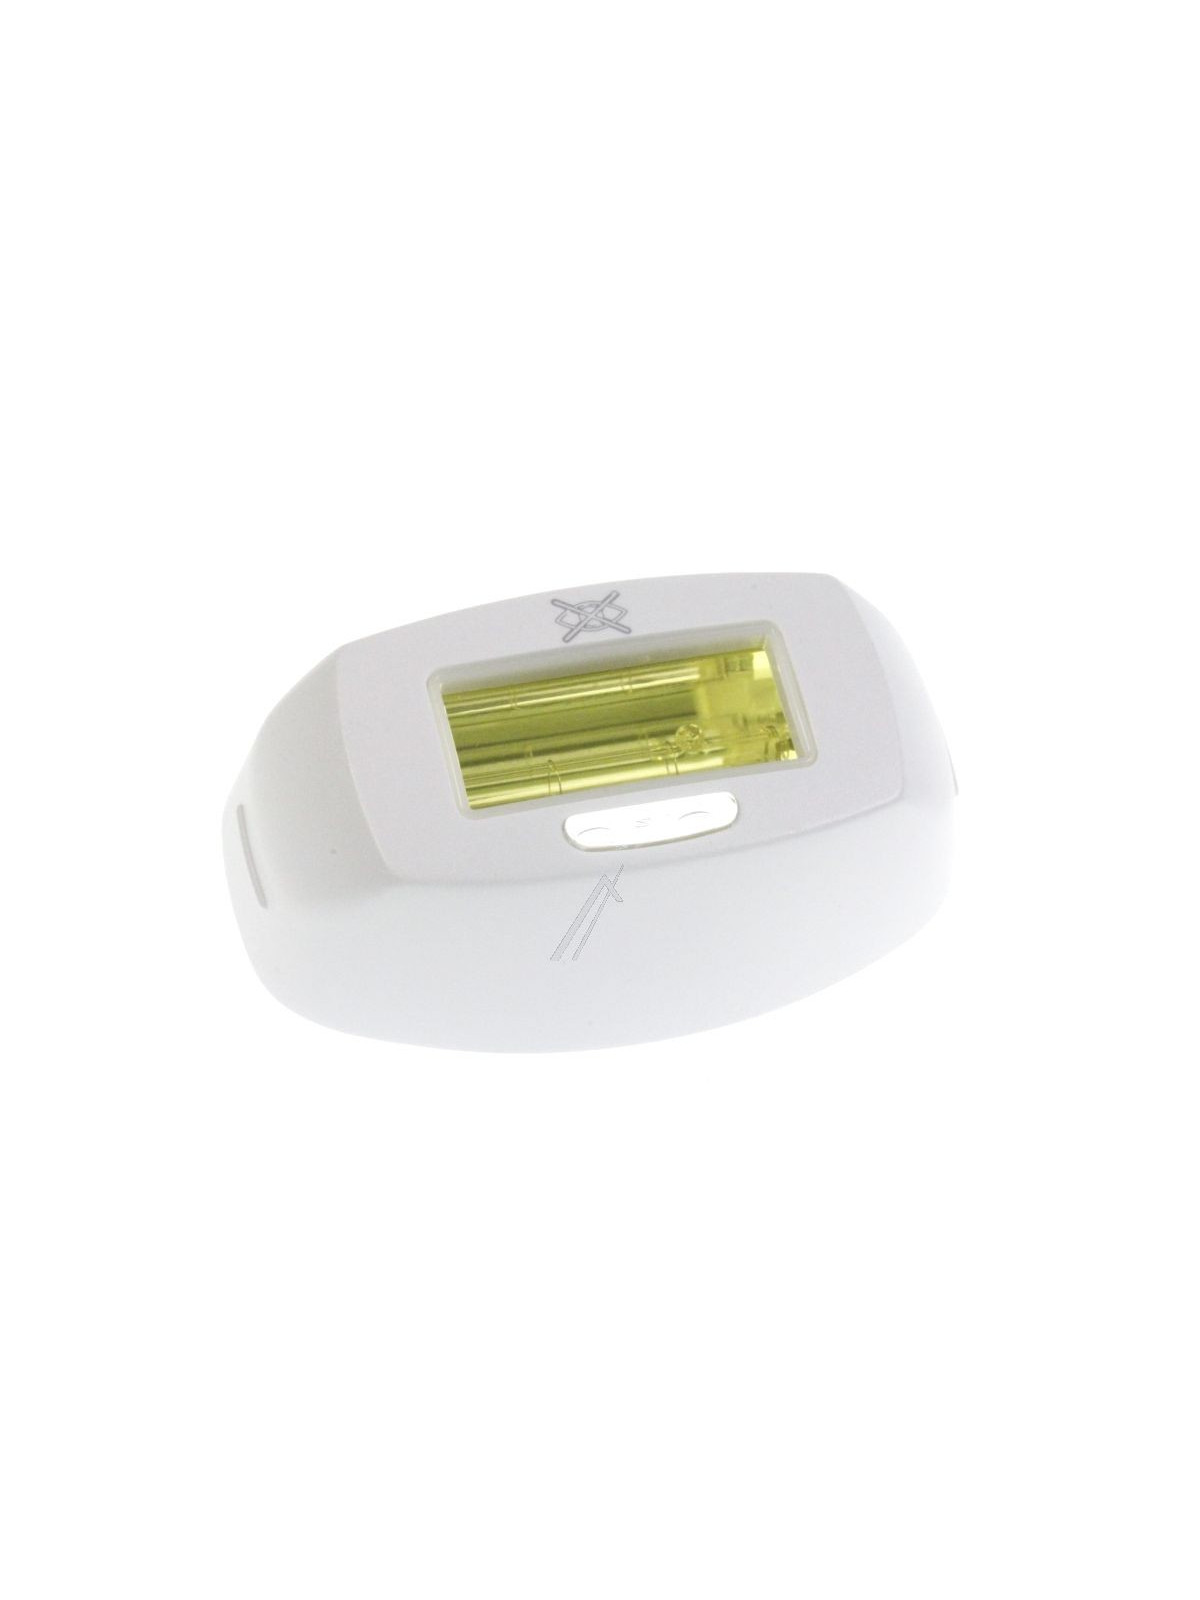 Lampe Calor Derma Perfect EP9870C0 - Epilateur